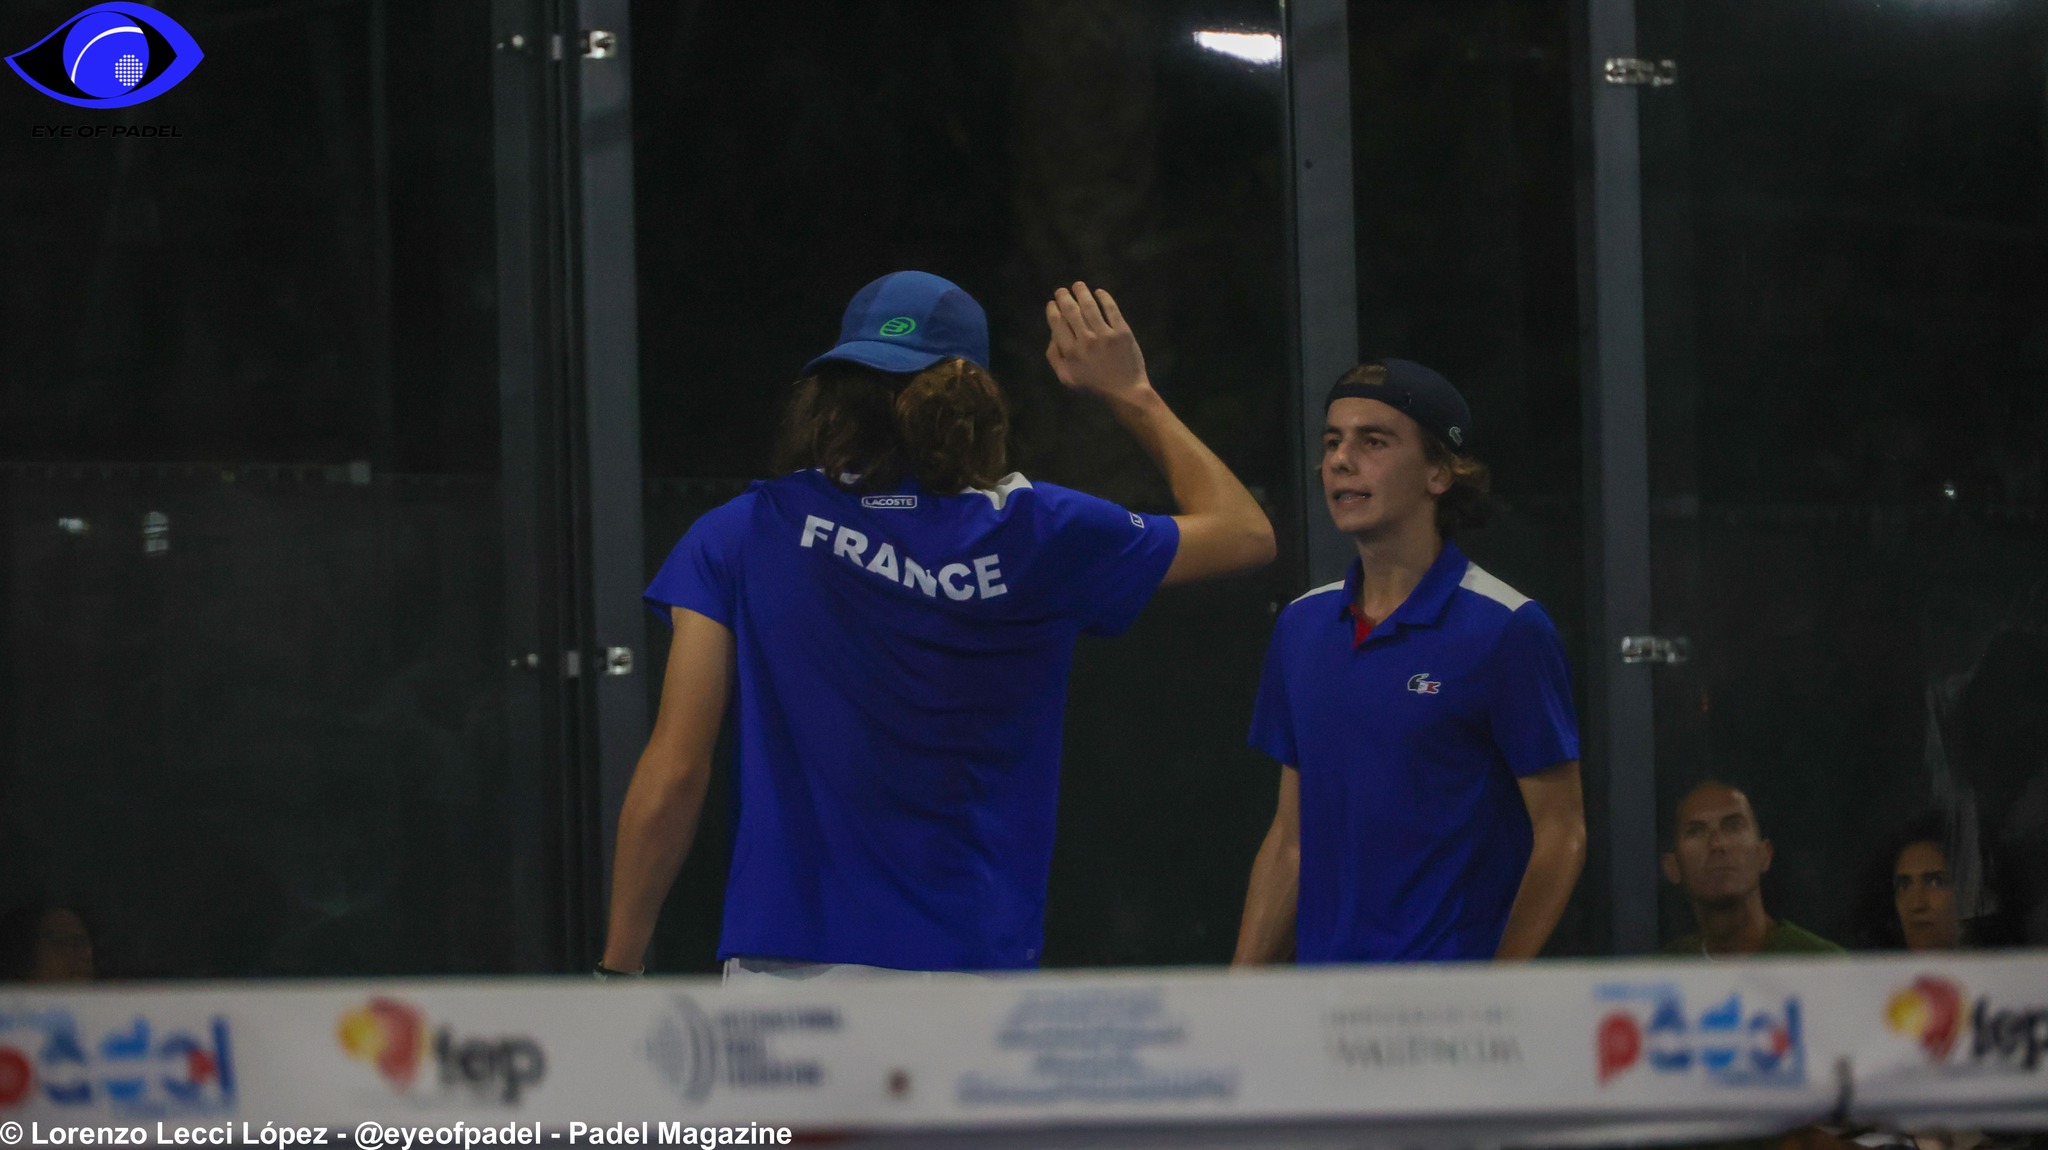 LIVE Championnats d’Europe Juniors : France vs Pays-Bas (M)